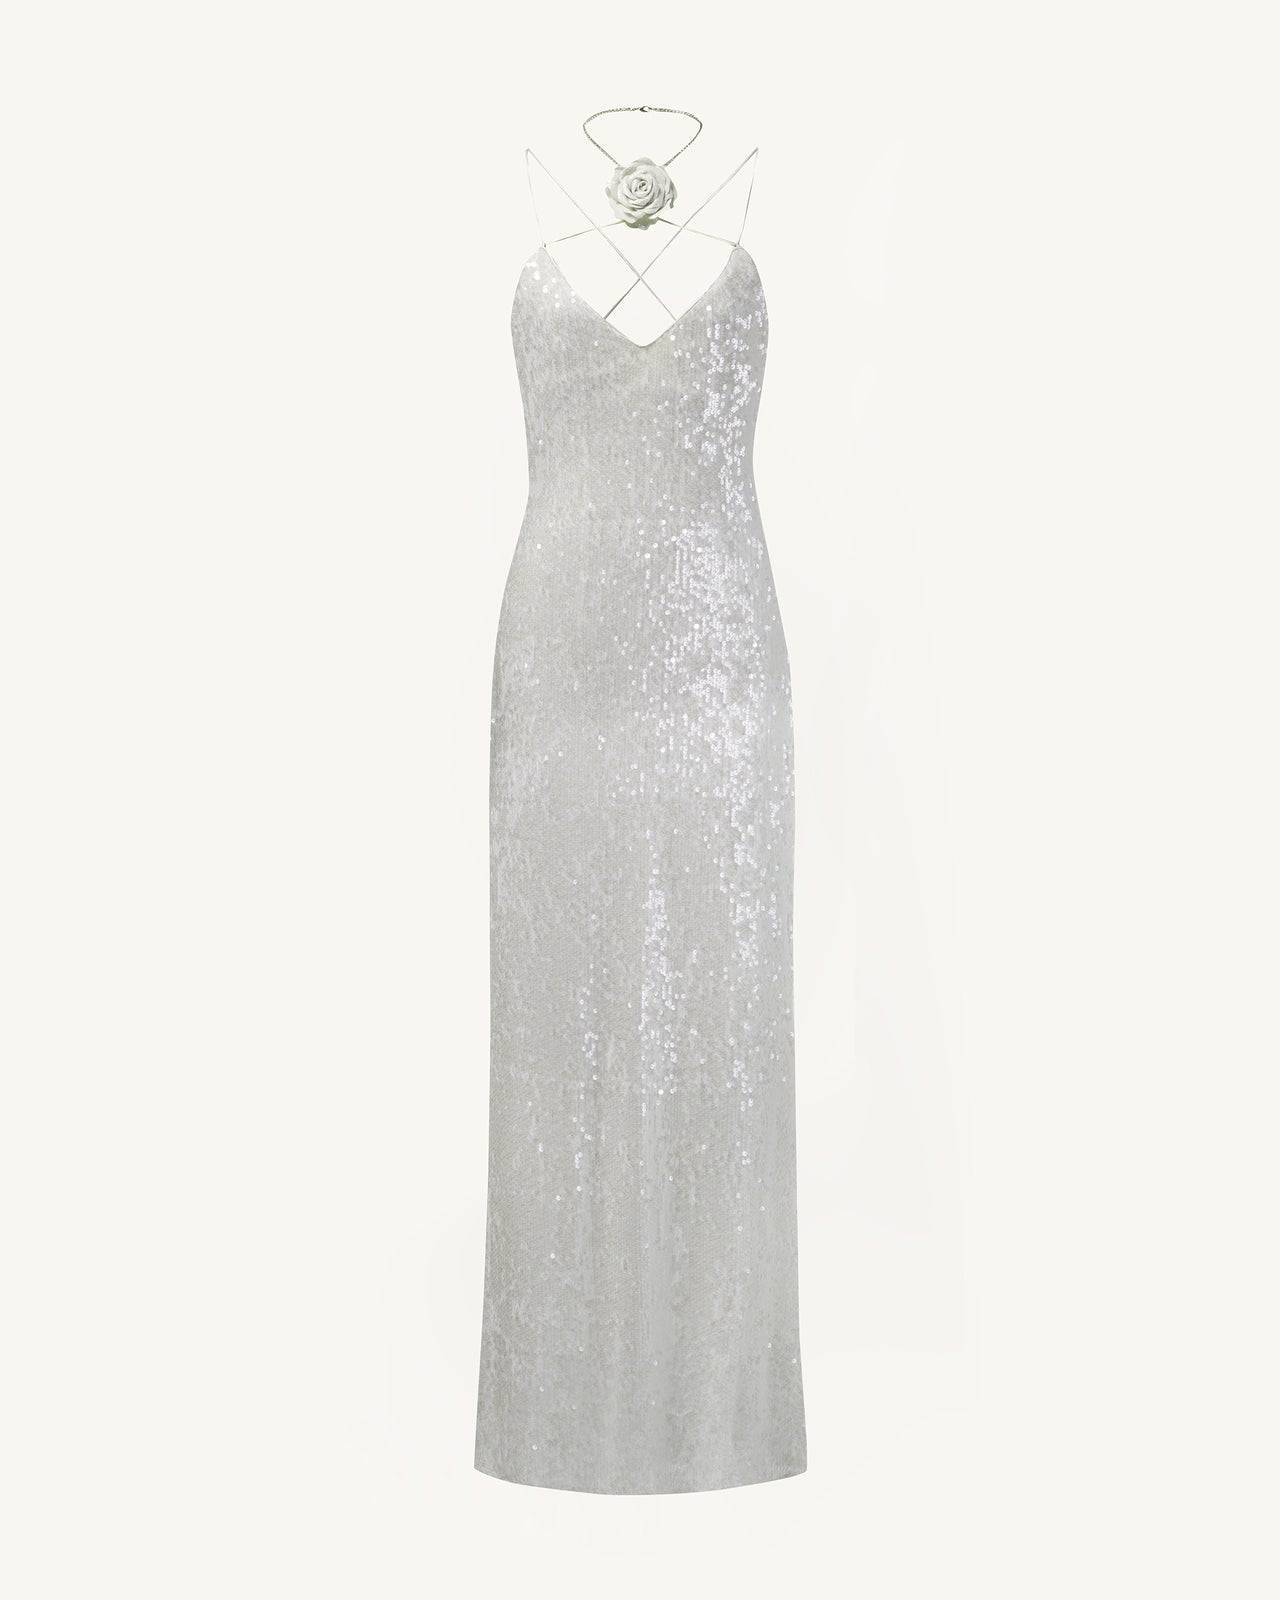 Heisey White Sequinned Rosette Maxi Dress - White